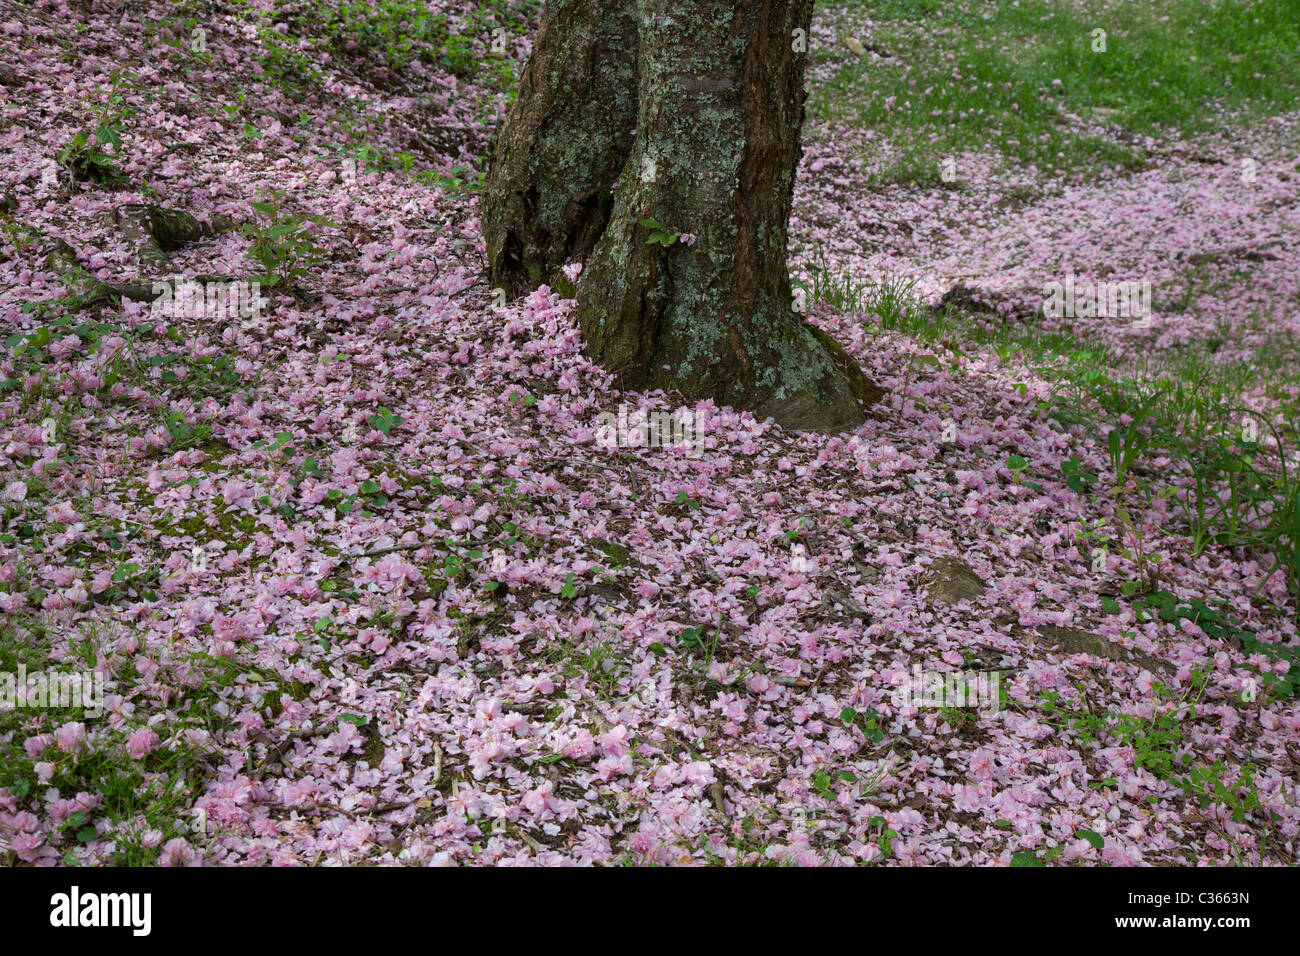 Oak Ridge, Tennessee - los cerezos en flor de cerezo Kwanzan sobre el suelo en el arboreto de la Universidad de Tennessee. Foto de stock